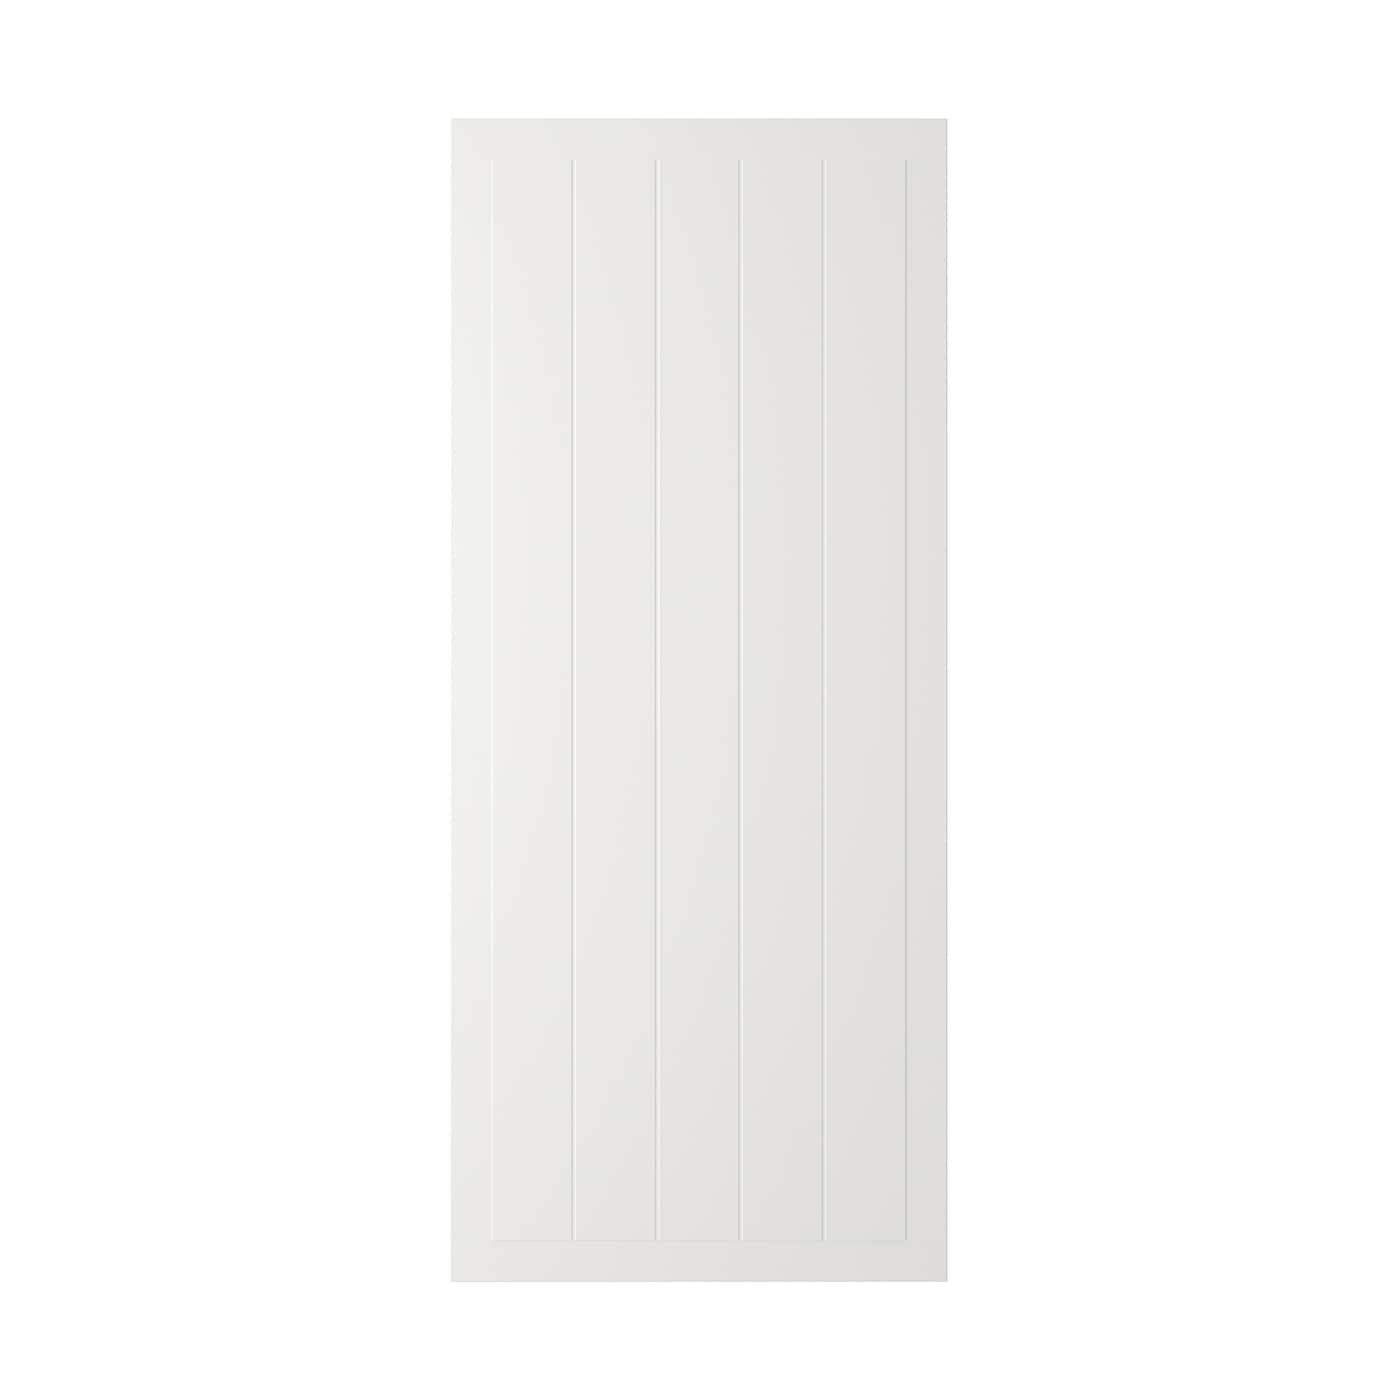 Дверца - IKEA STENSUND, 140х60 см, белый, СТЕНСУНД ИКЕА